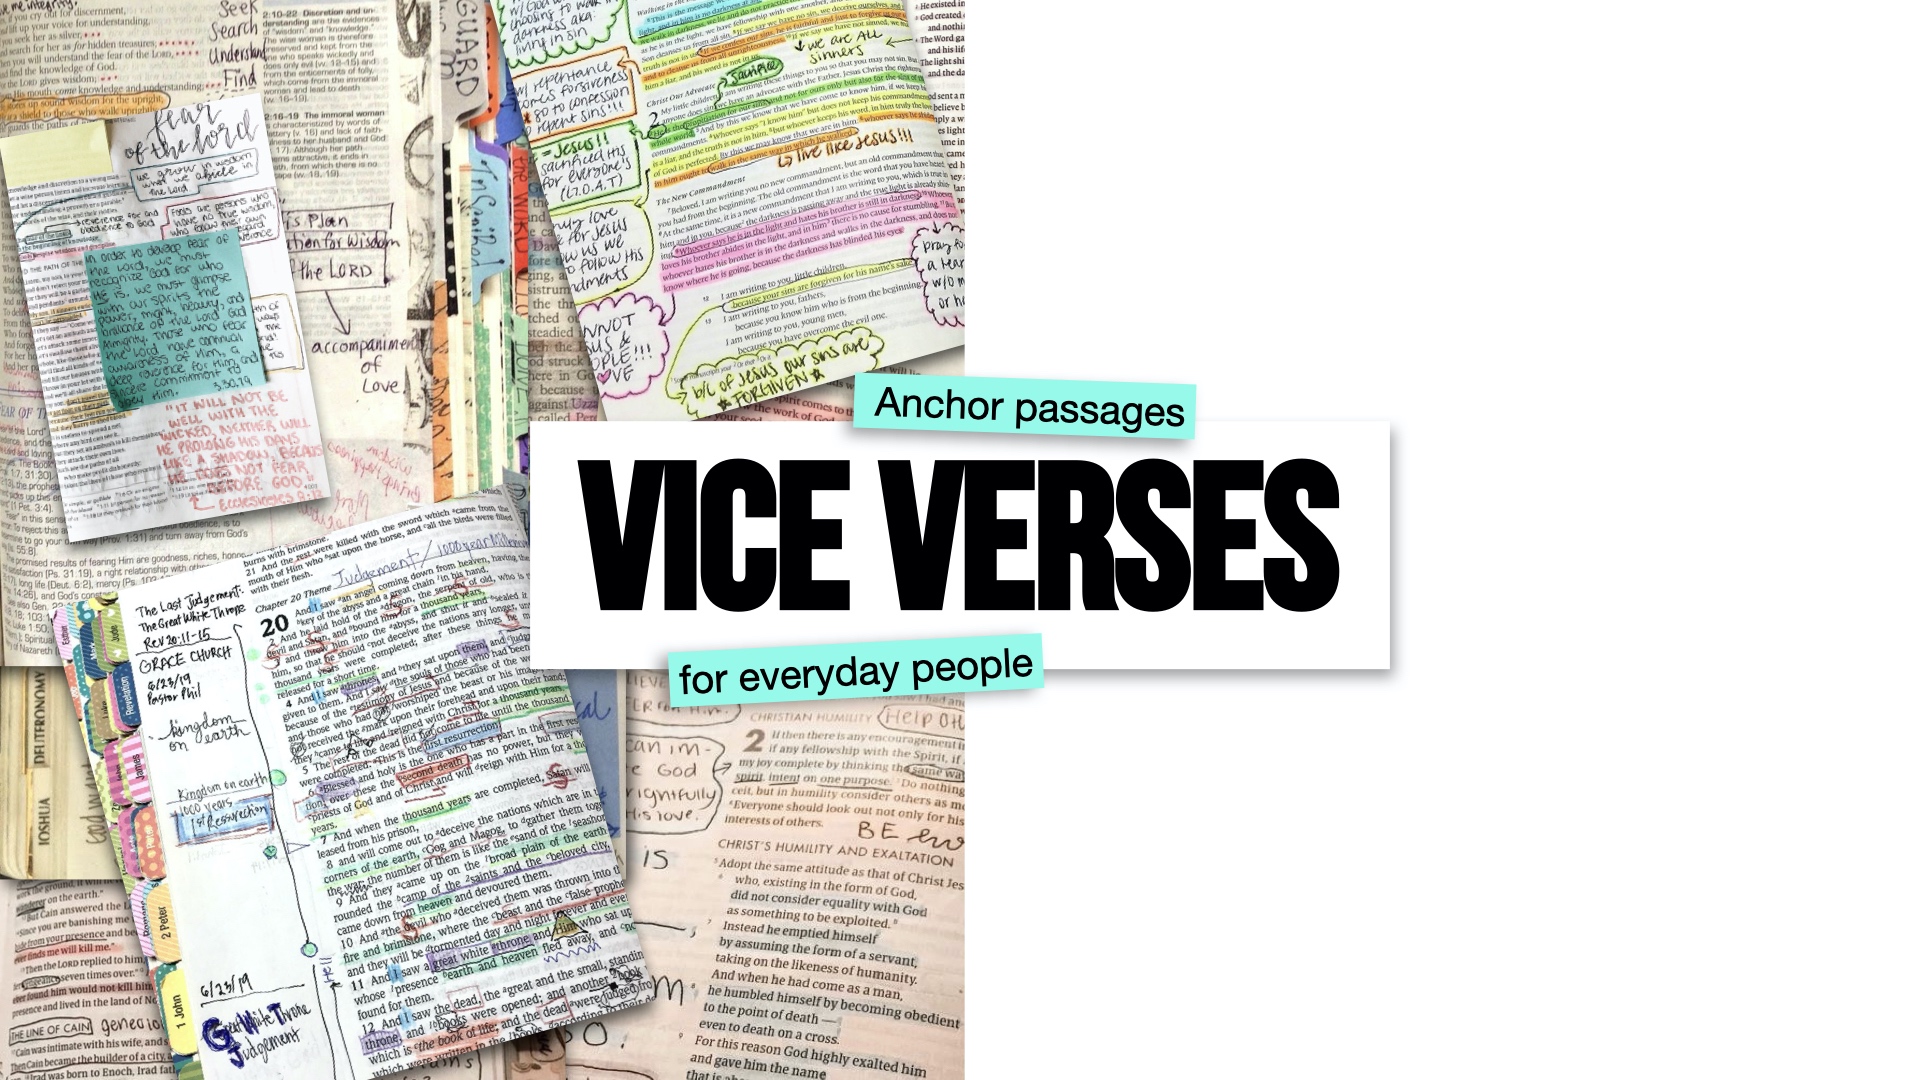 Vice Verse: Prov. 3:5-6